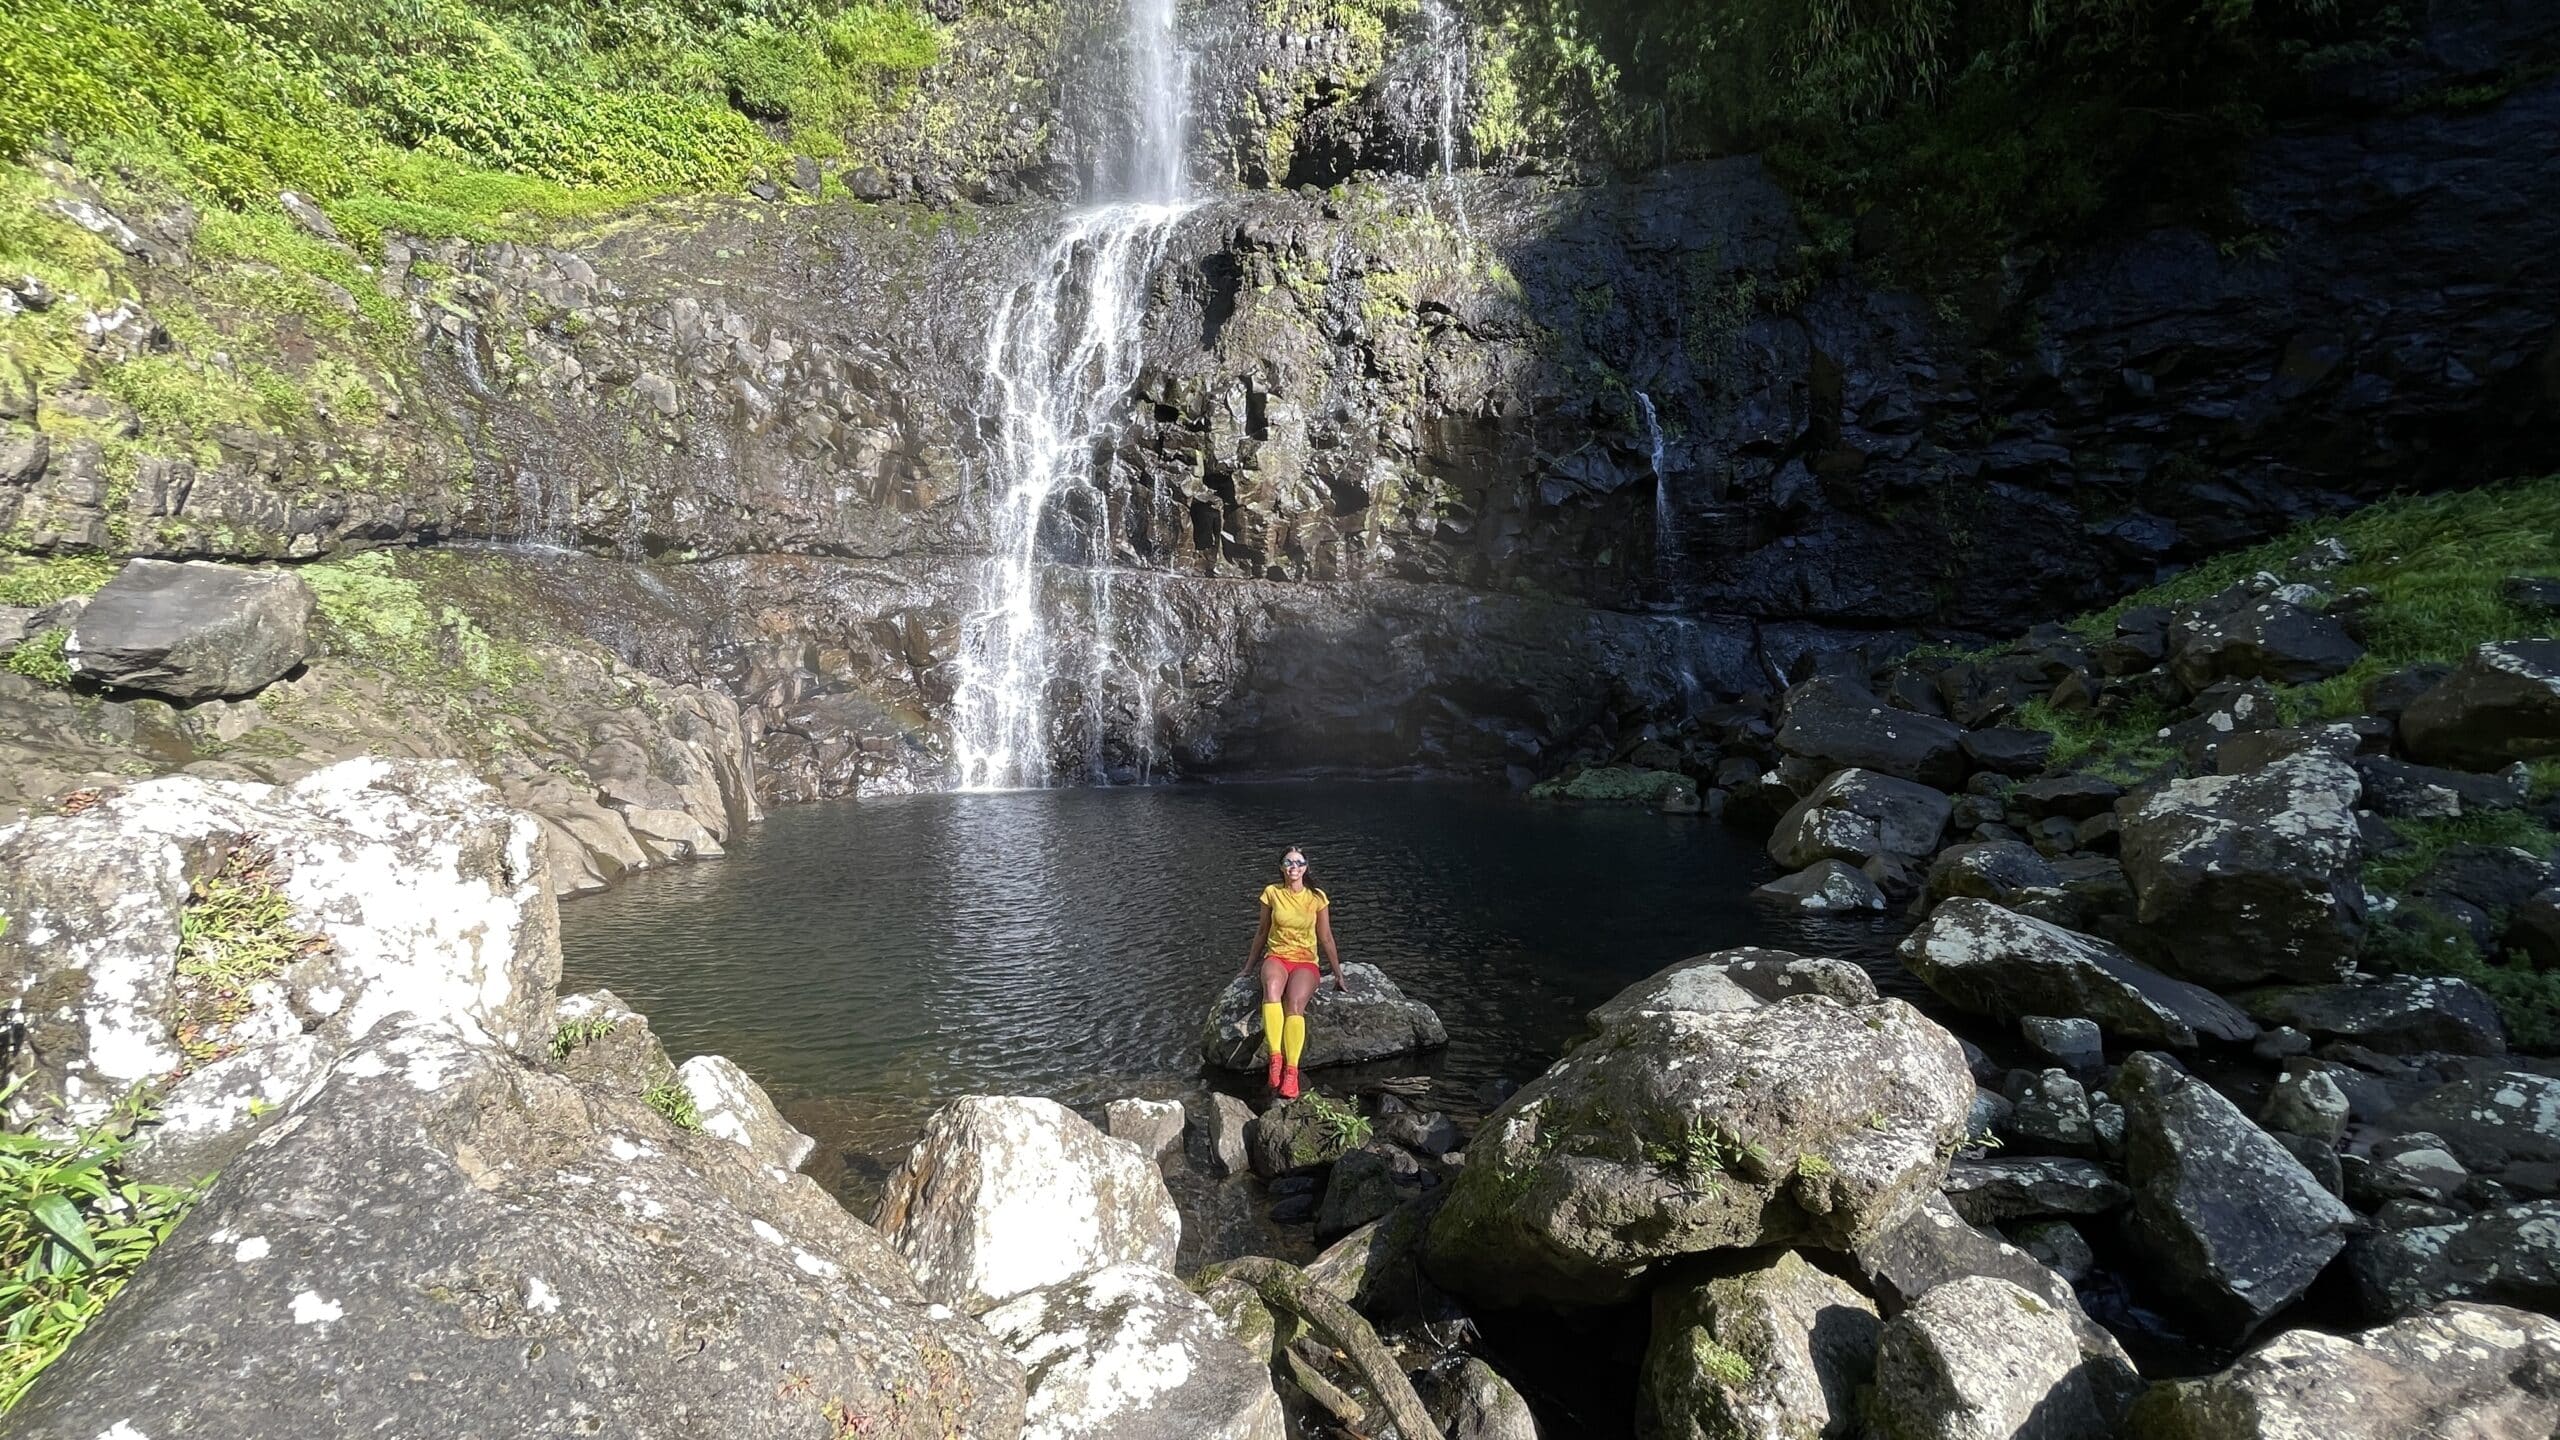 Cascade du Bras Sec | Takamaka | Randonnée très difficile | Rivière des Marsouins | île de La Réunion